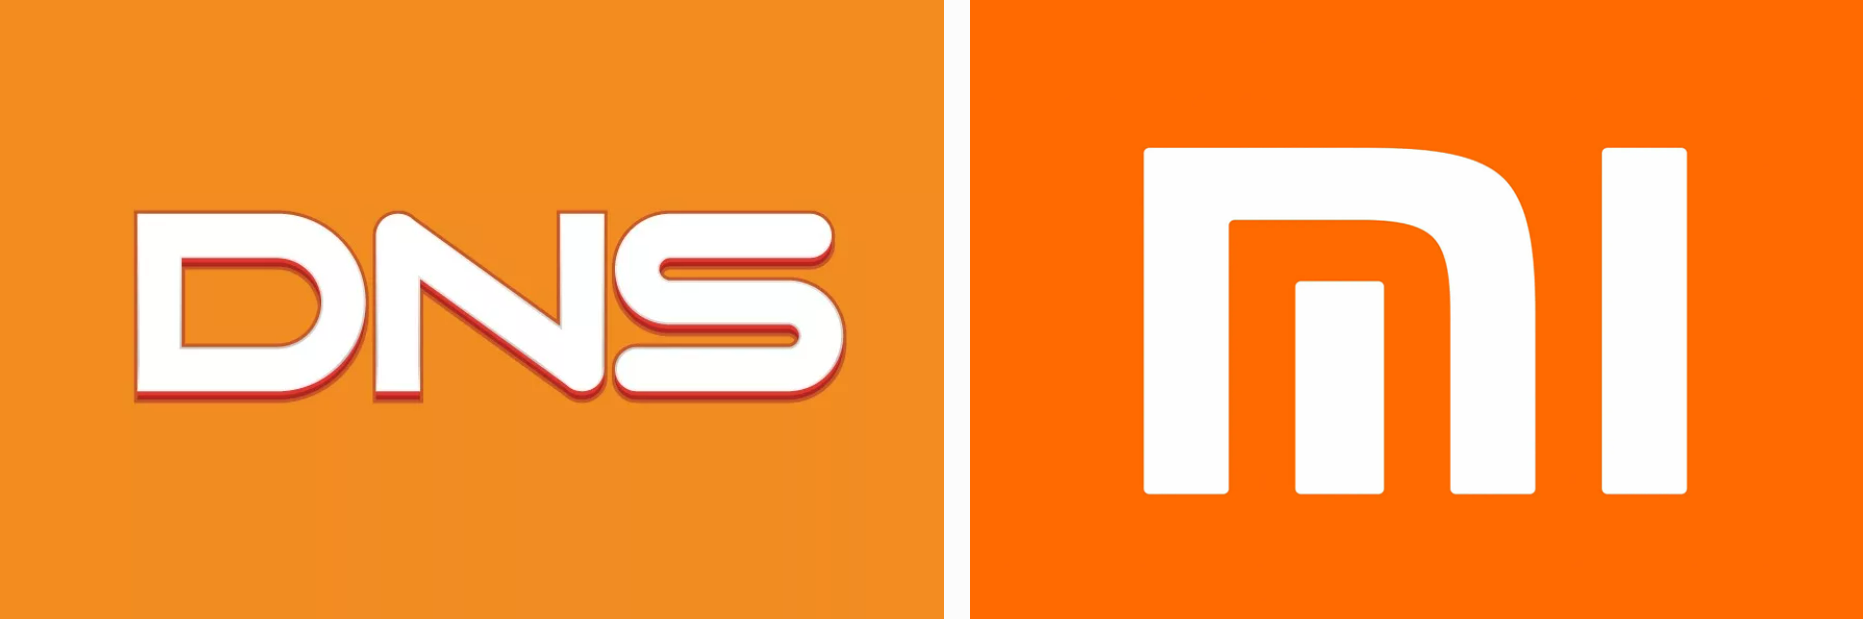 Логотипы сети розничных магазинов DNS и производителя электроники и бытовой техники Xiaomi